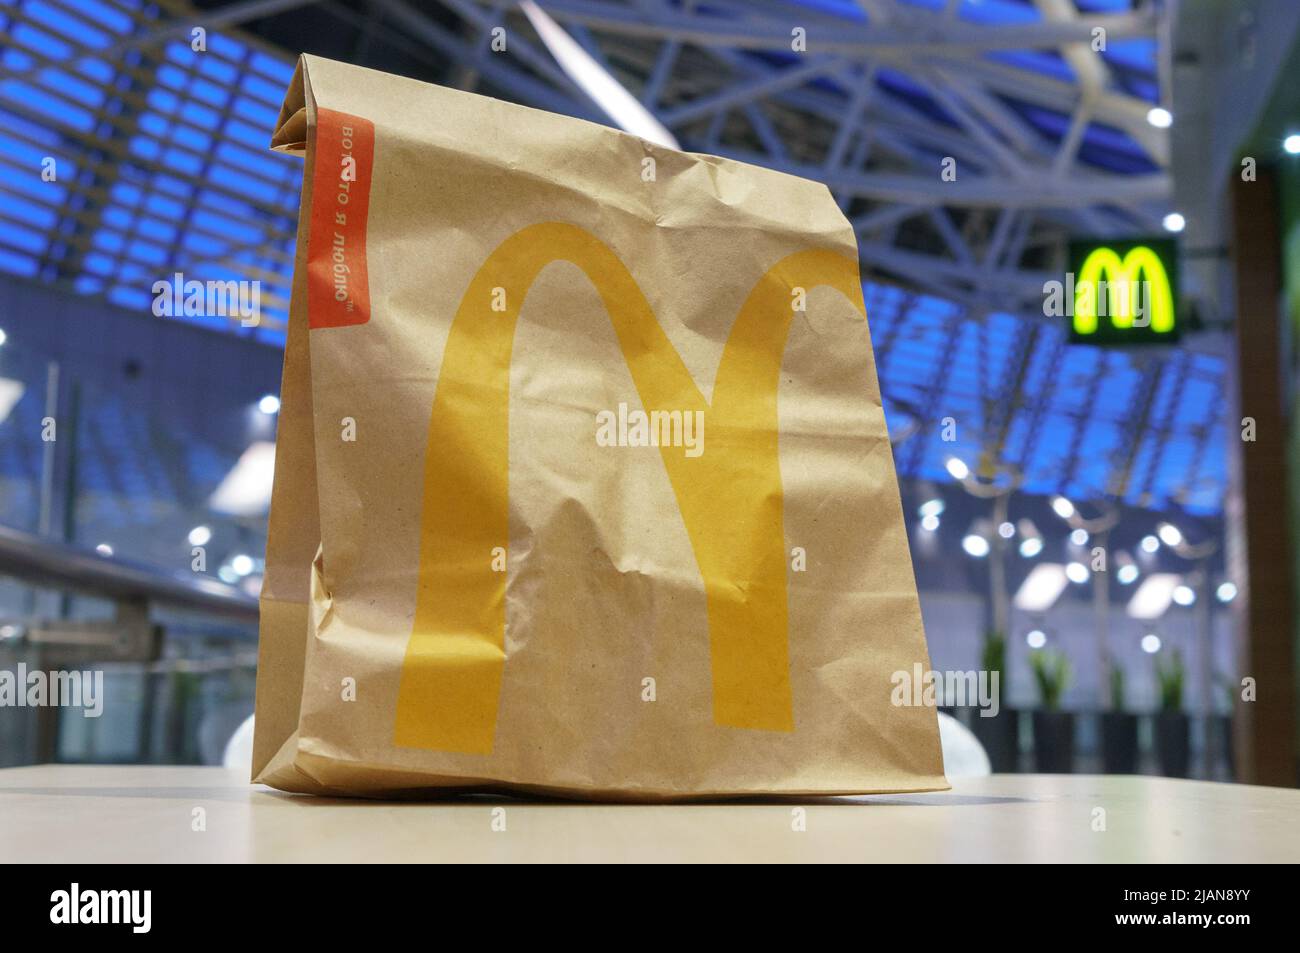 Moscou, Russie - 07 février 2019 : sac en papier brun McDonald’s avec kiosque flou dans un centre commercial Banque D'Images